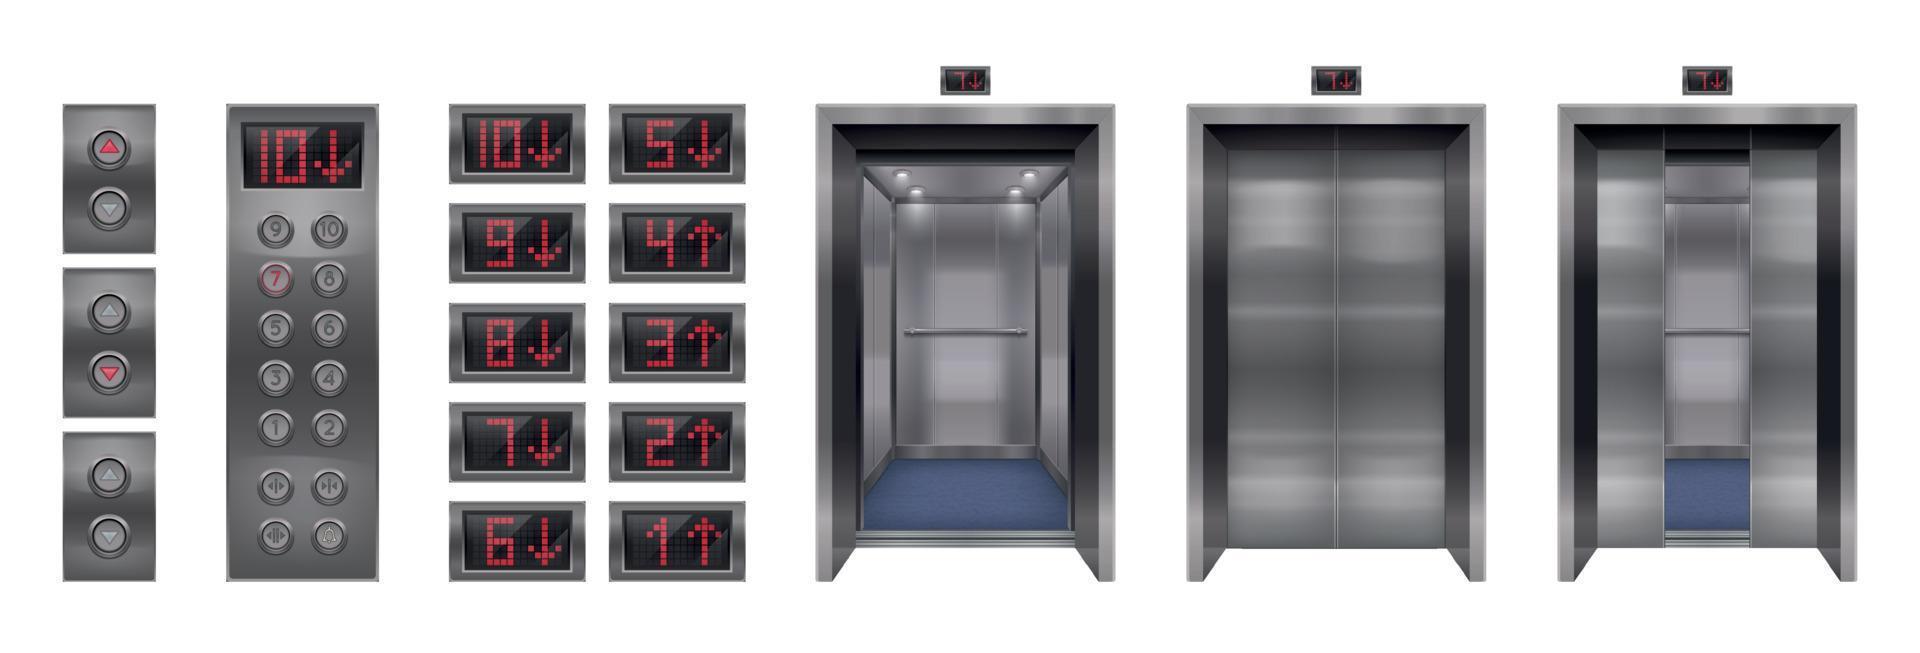 insieme di elementi realistici dell'ascensore vettore